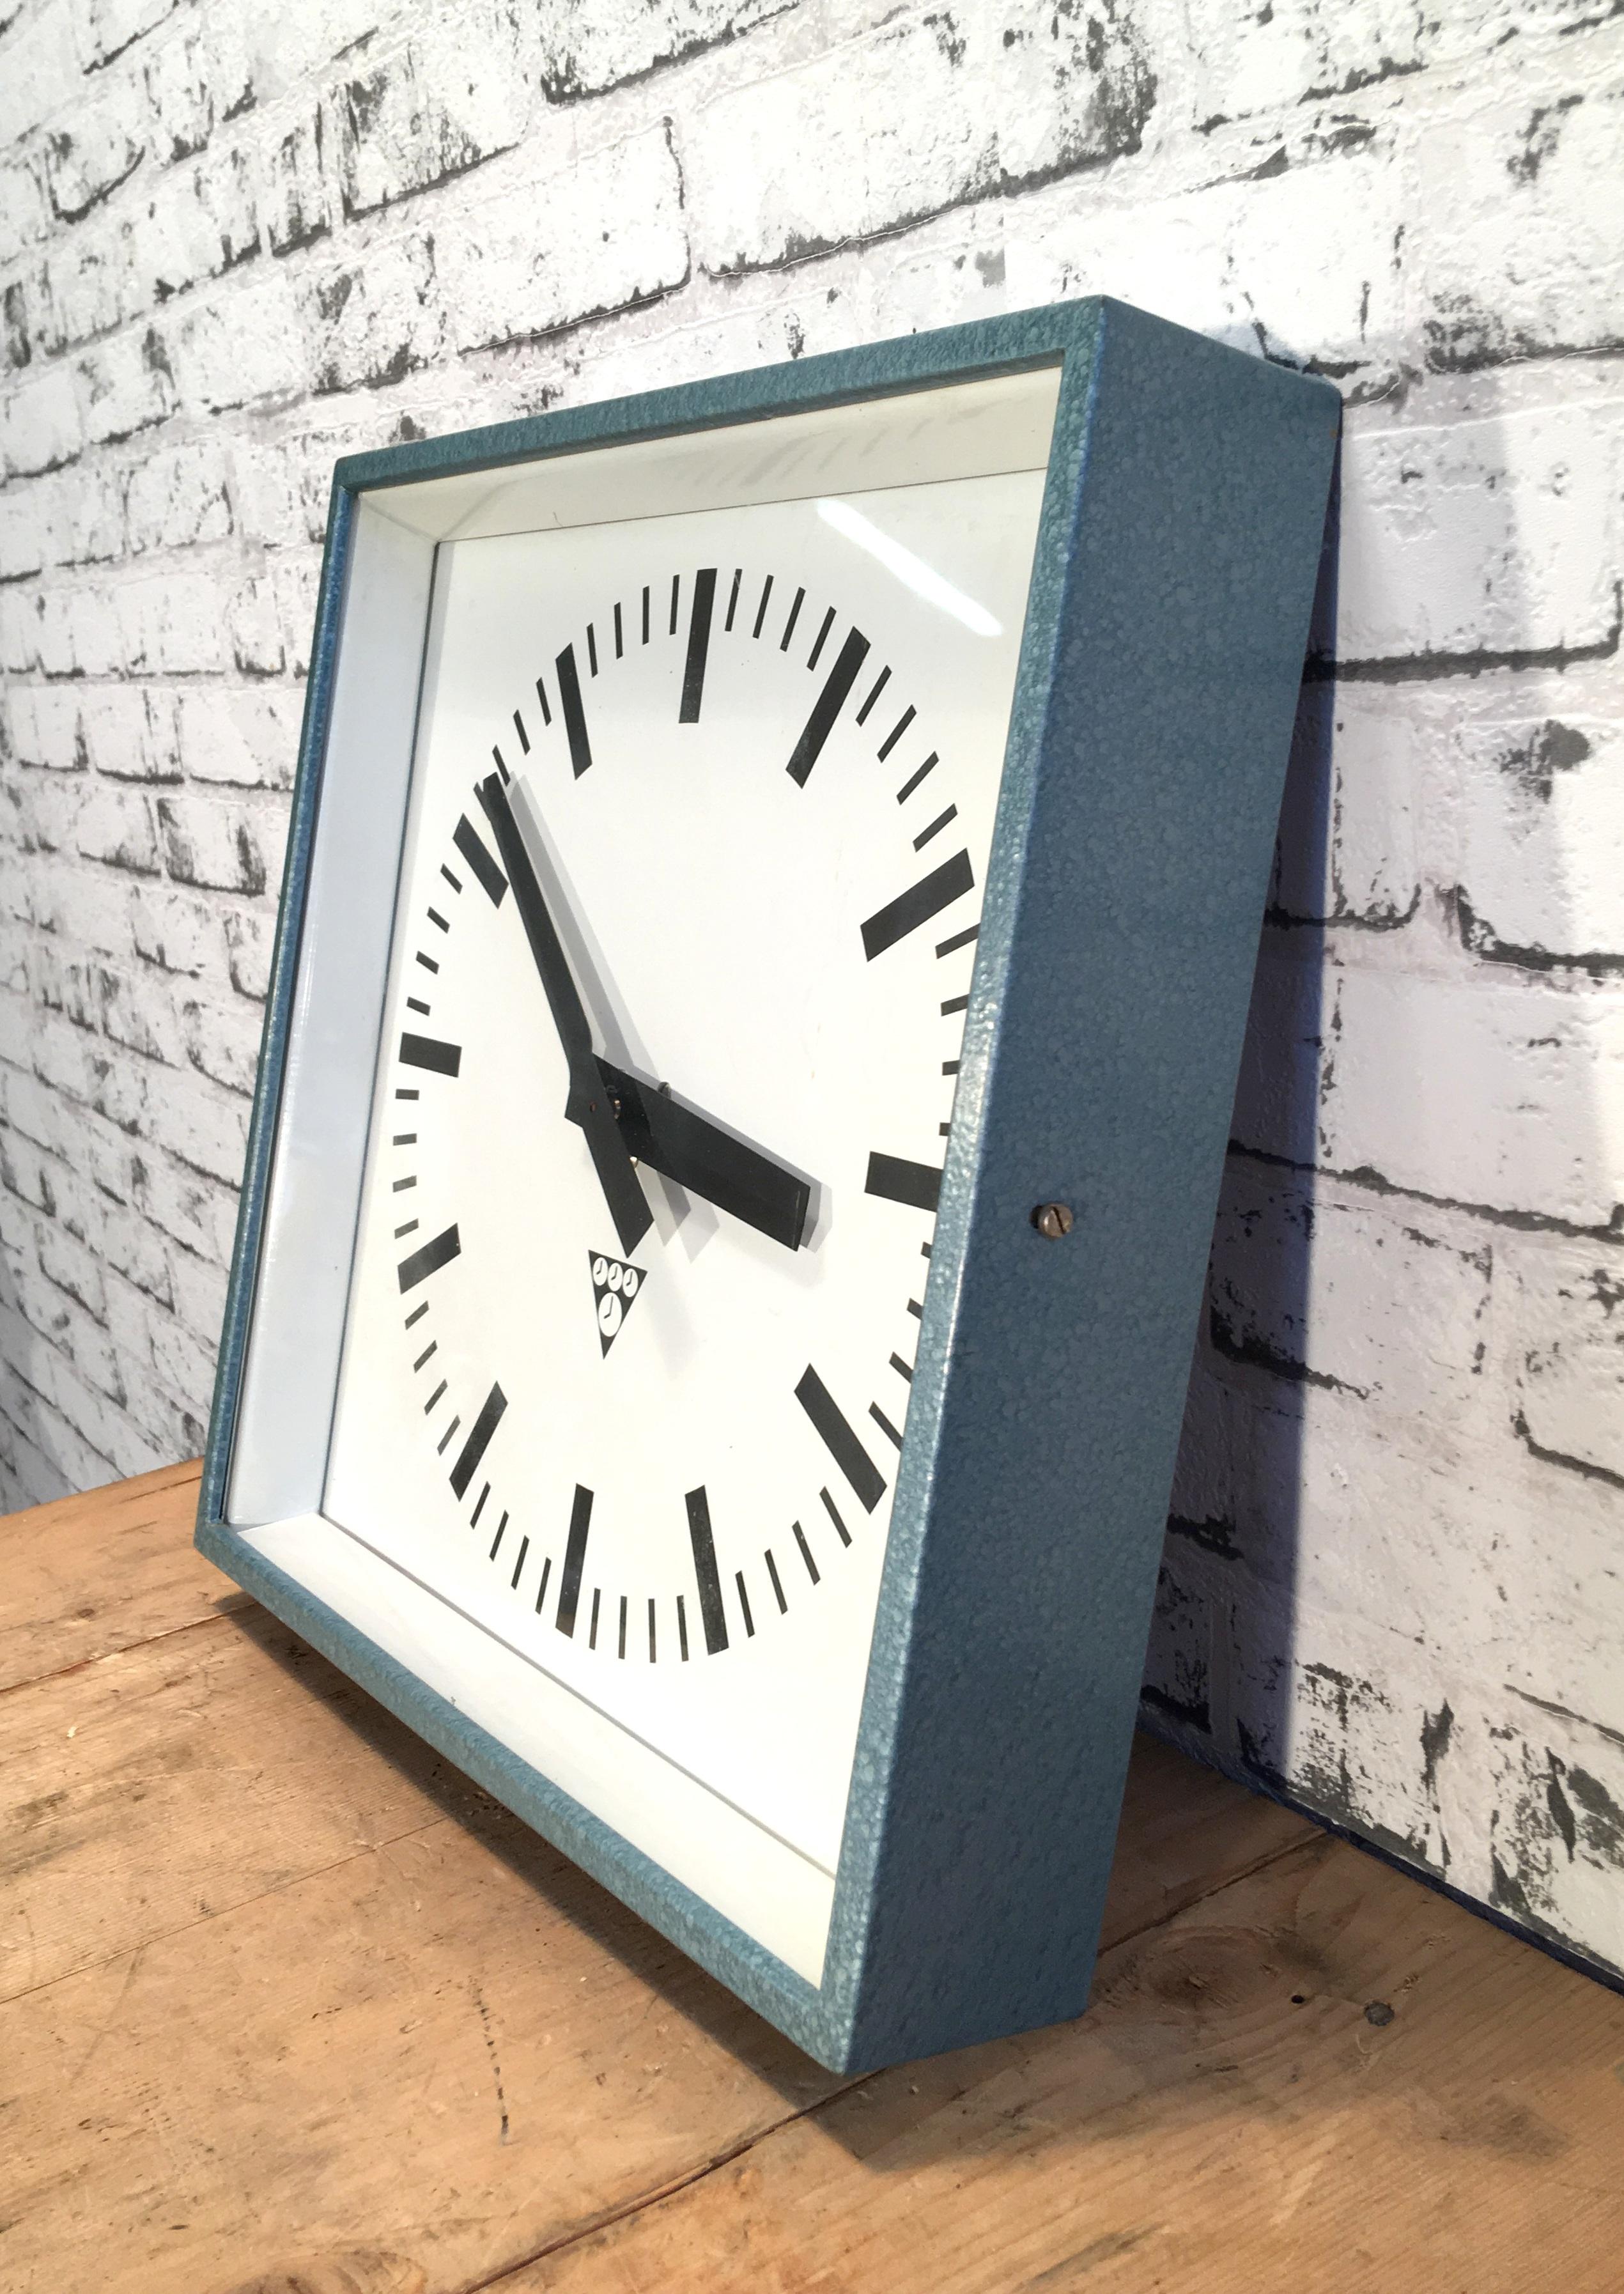 Diese Uhr wurde in den 1970er Jahren von Pragotron in der ehemaligen Tschechoslowakei hergestellt und in Fabriken:: Schulen und Bahnhöfen eingesetzt. Sie hat einen blau-grau gestrichenen Korpus mit Klarglasabdeckung. 
Der Artikel wurde in ein